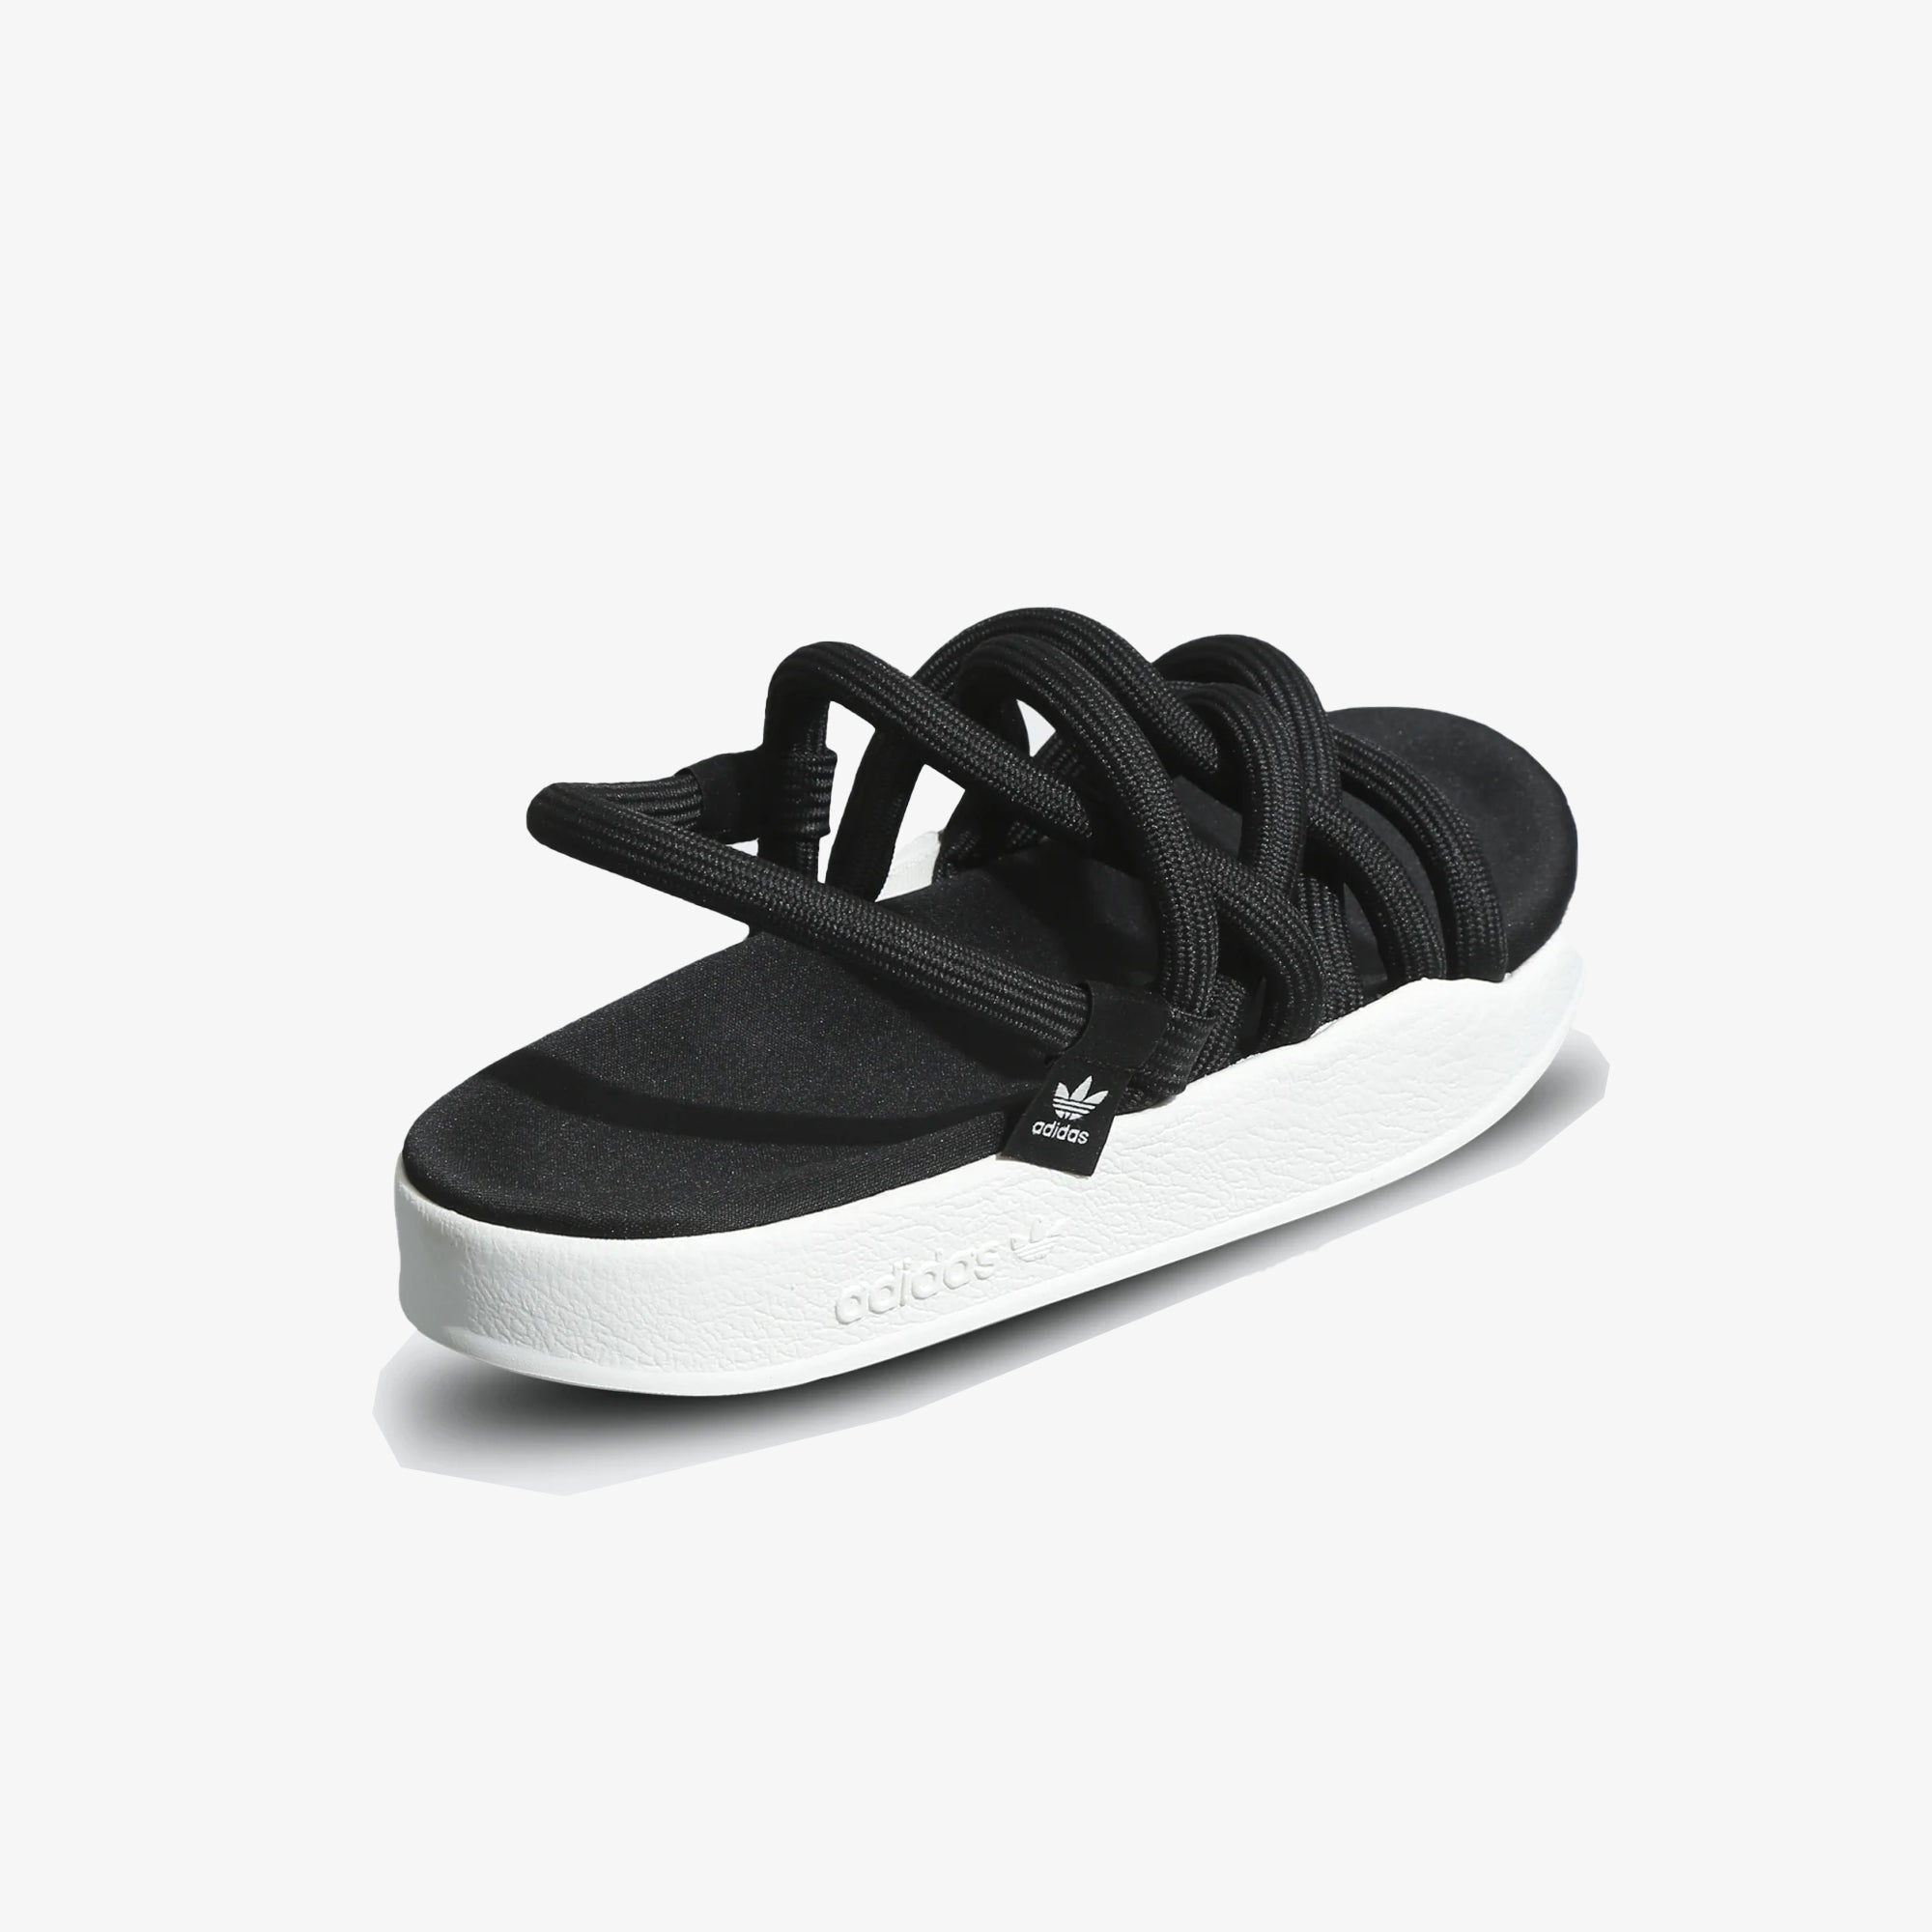 Adidas] Mens Alphabounce Slides Sandals Black White India | Ubuy